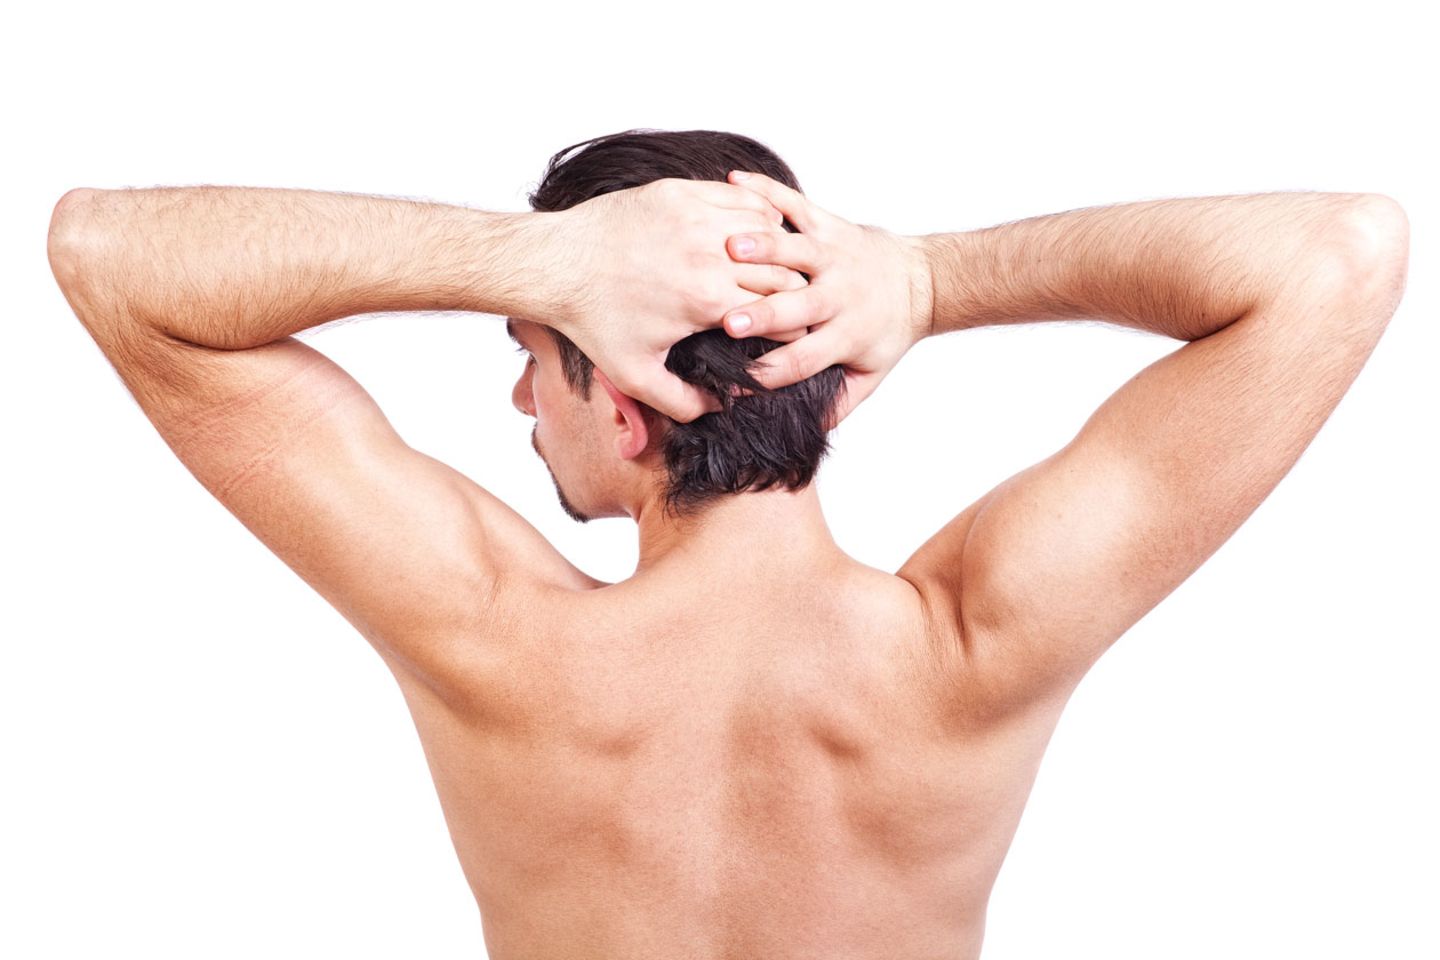 Wer früh gegen Verspannungen vorgeht, vermeidet Rückenschmerzen